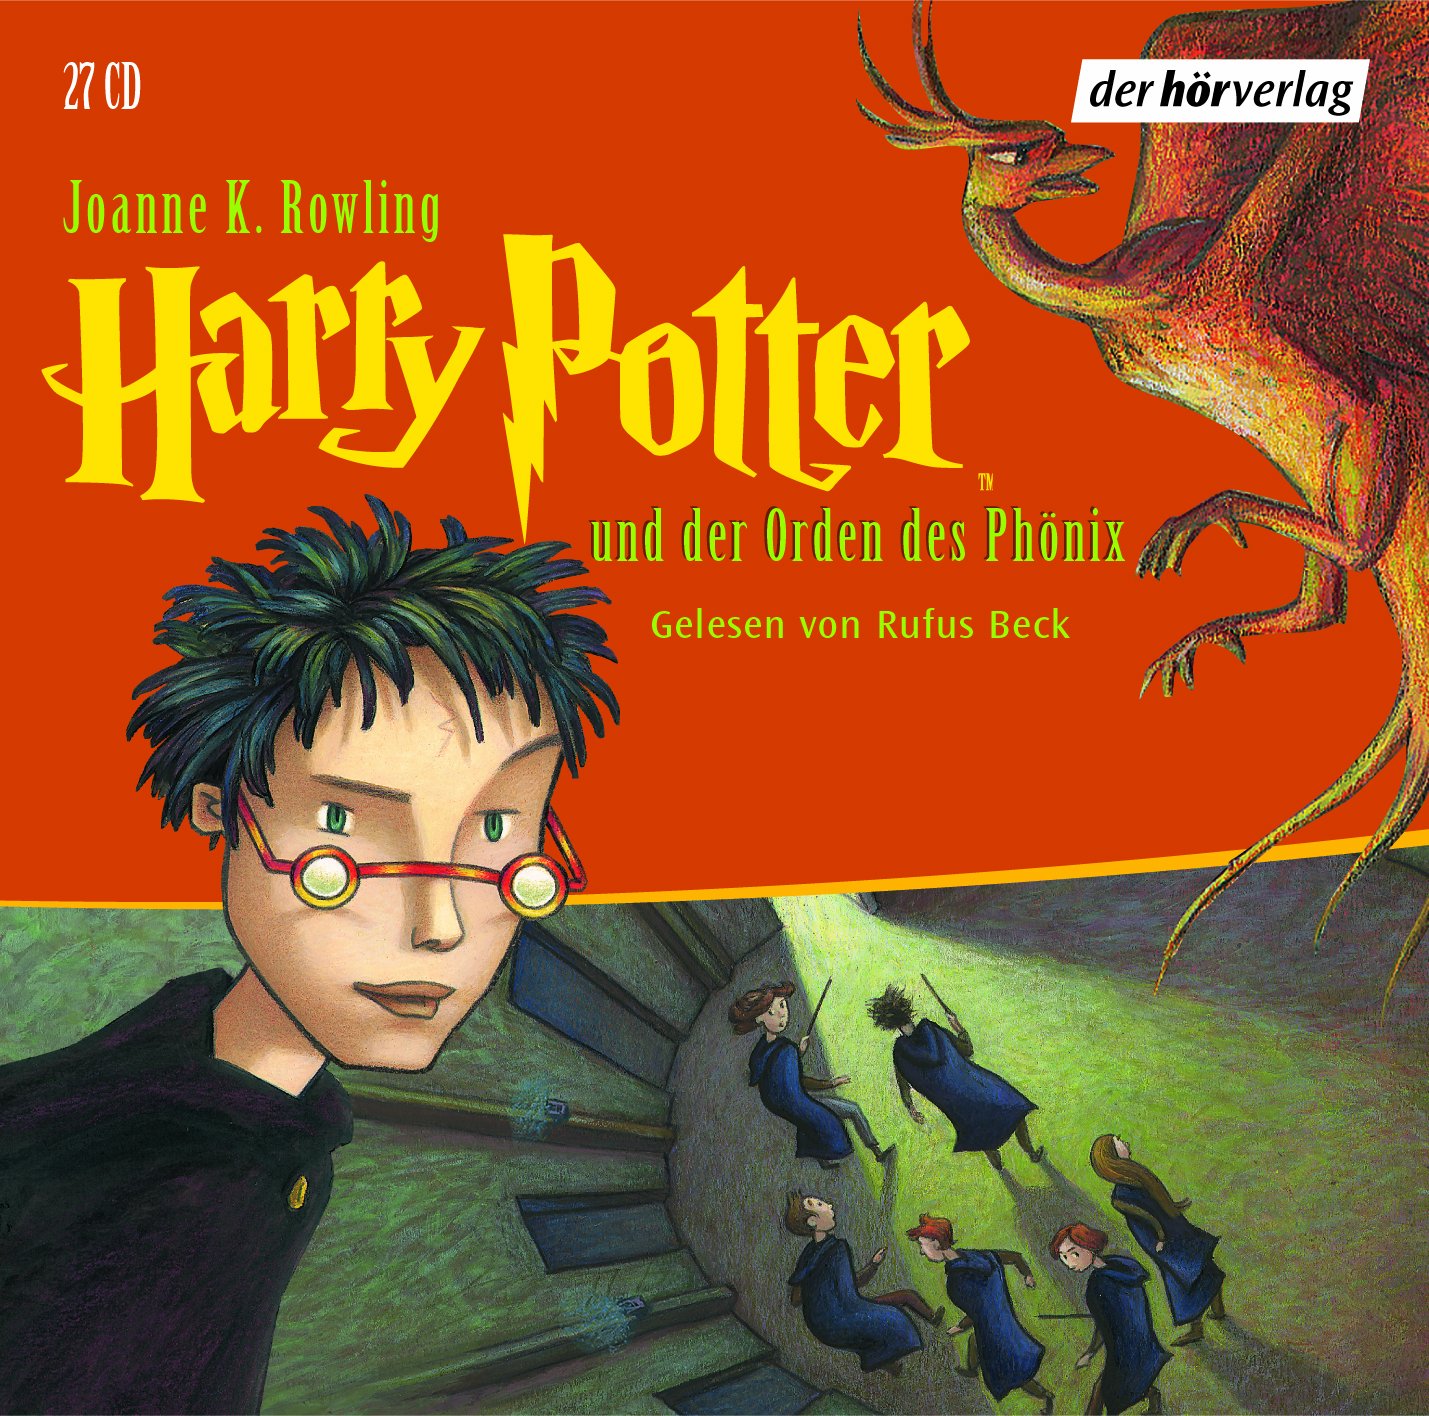 Harry Potter Hörbücher